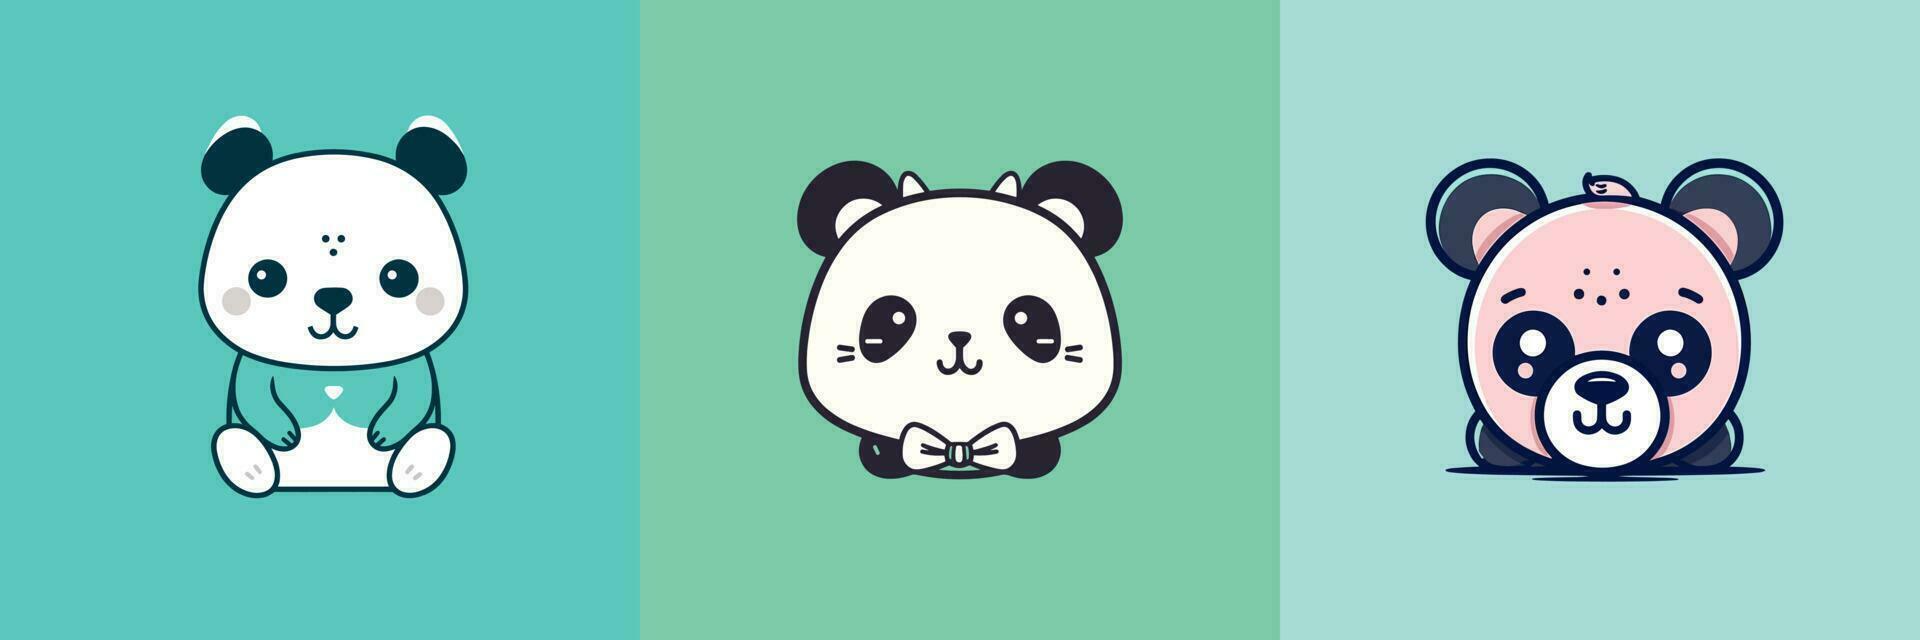 carino kawaii panda cartone animato illustrazione vettore